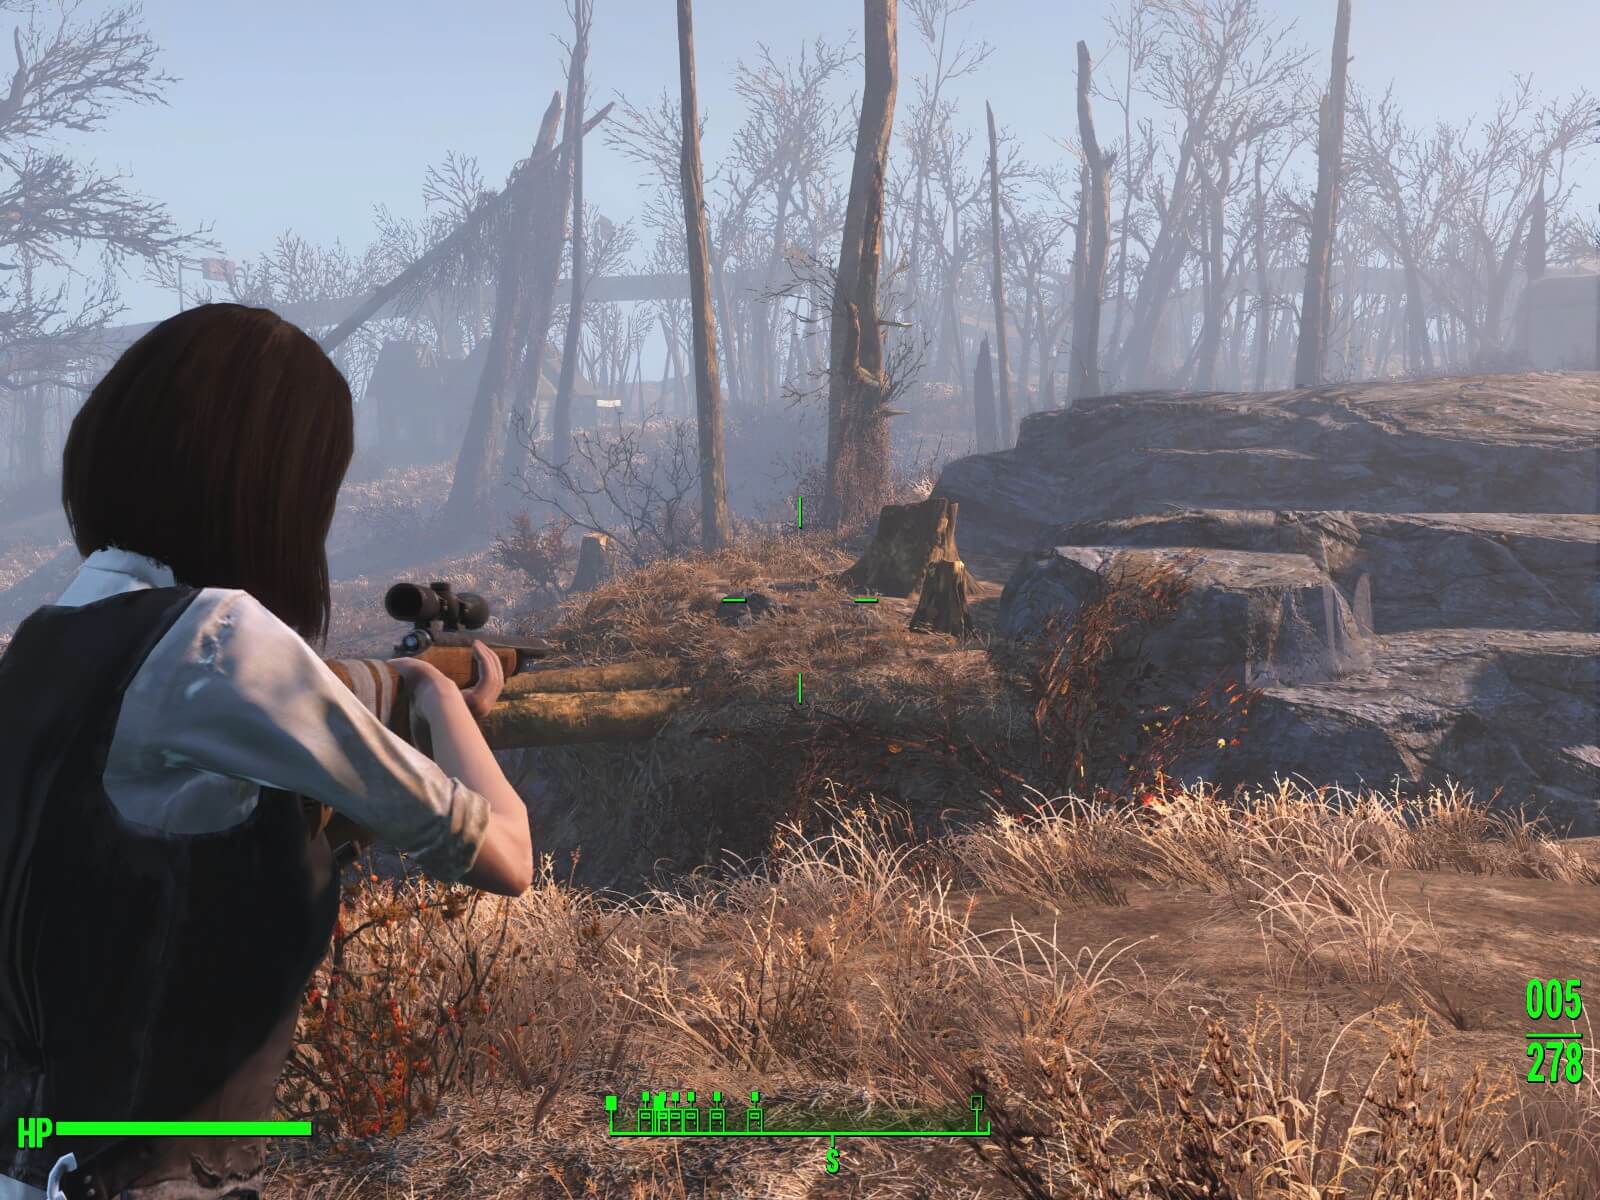 Fallout4 Pc版がv1 3にアップデート 入植者のステータスメニュー追加や生きたままバラバラになる不具合修正など ねこくまぶろぐ